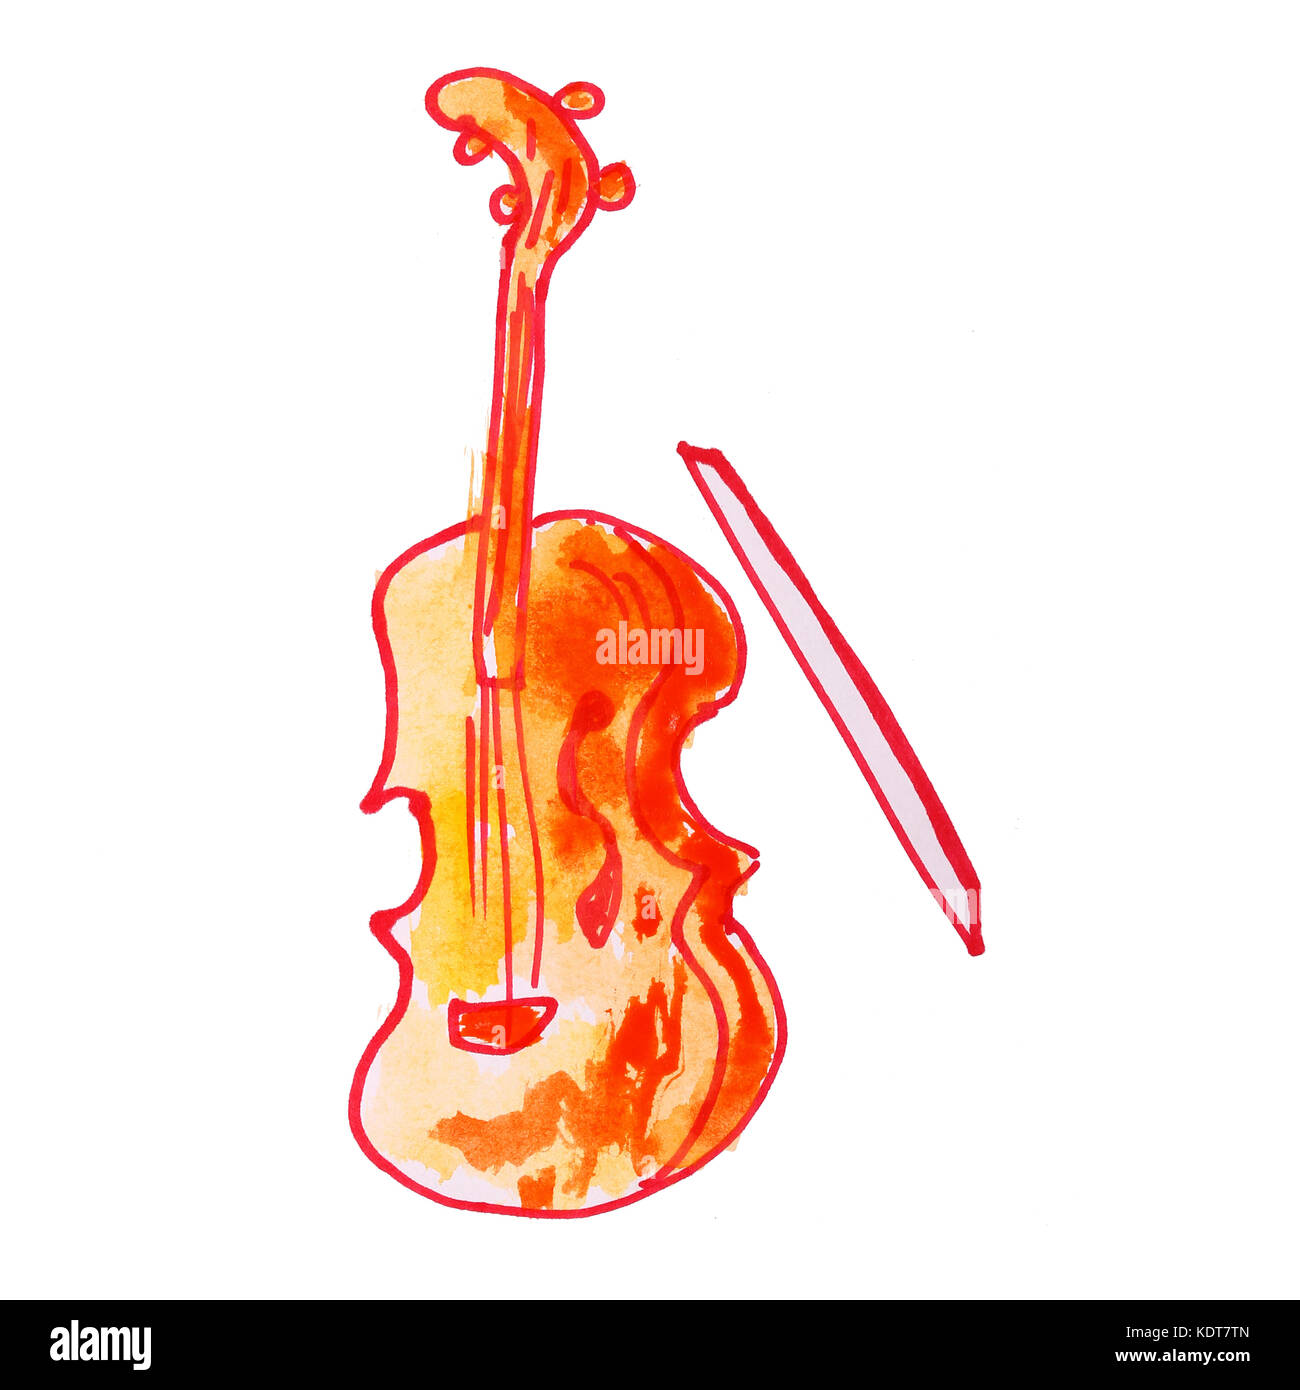 Archet de violon avec aquarelle dessin isolé sur fond blanc Banque D'Images